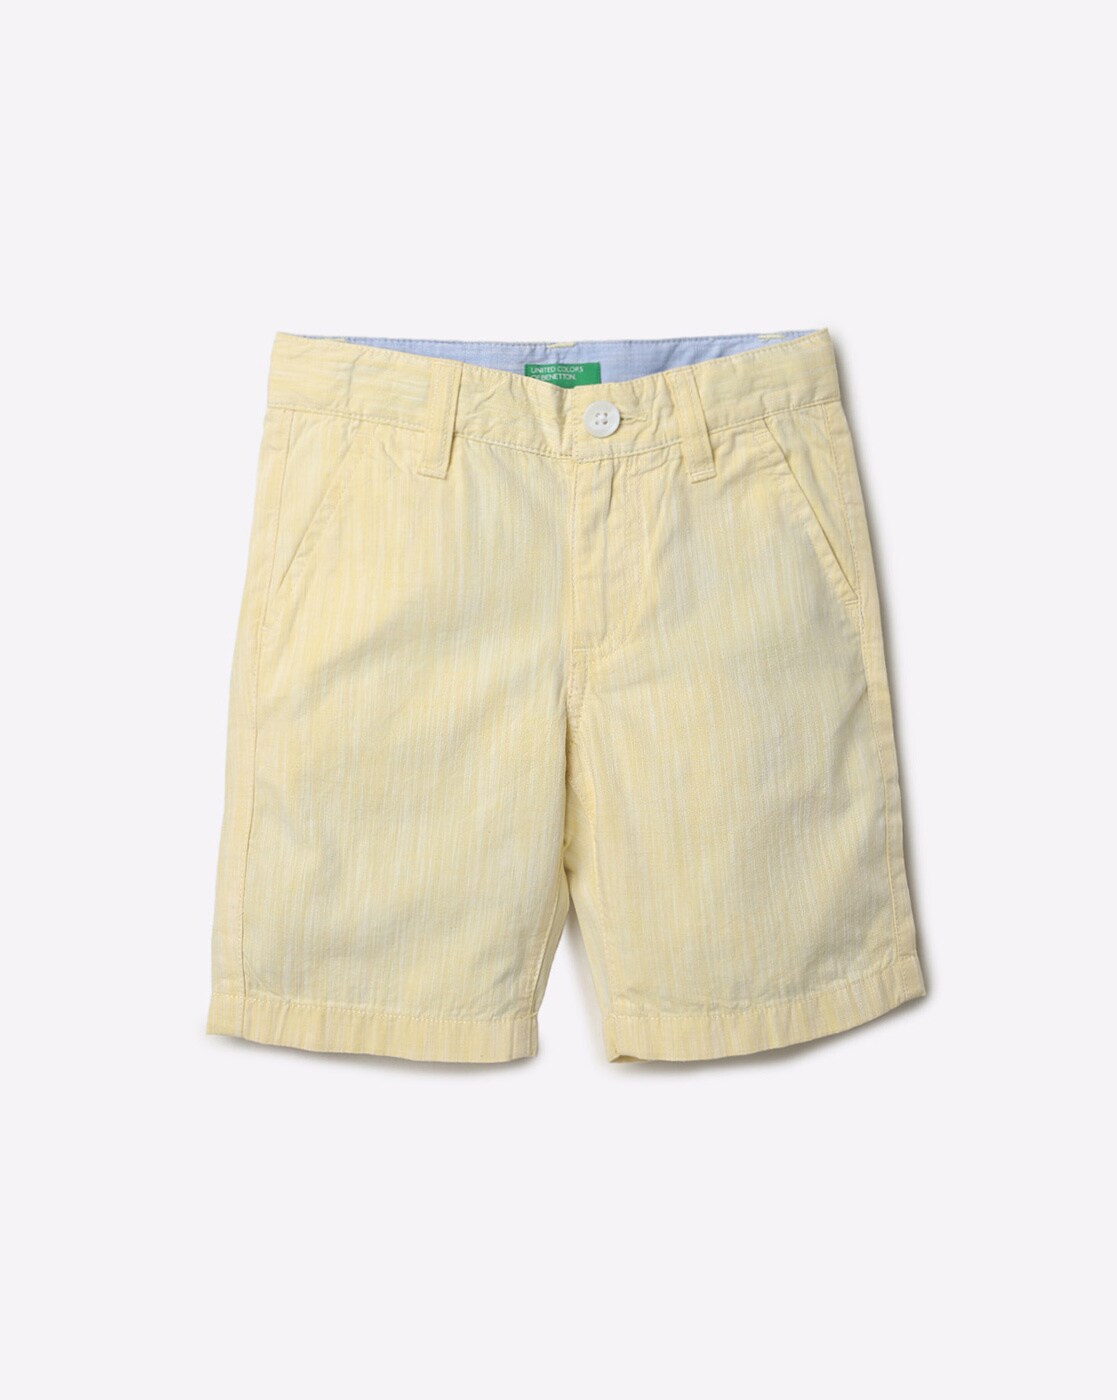 Jungen Bekleidung Hosen Shorts DE 68 UNITED COLORS OF BENETTON Jungen Shorts Gr 